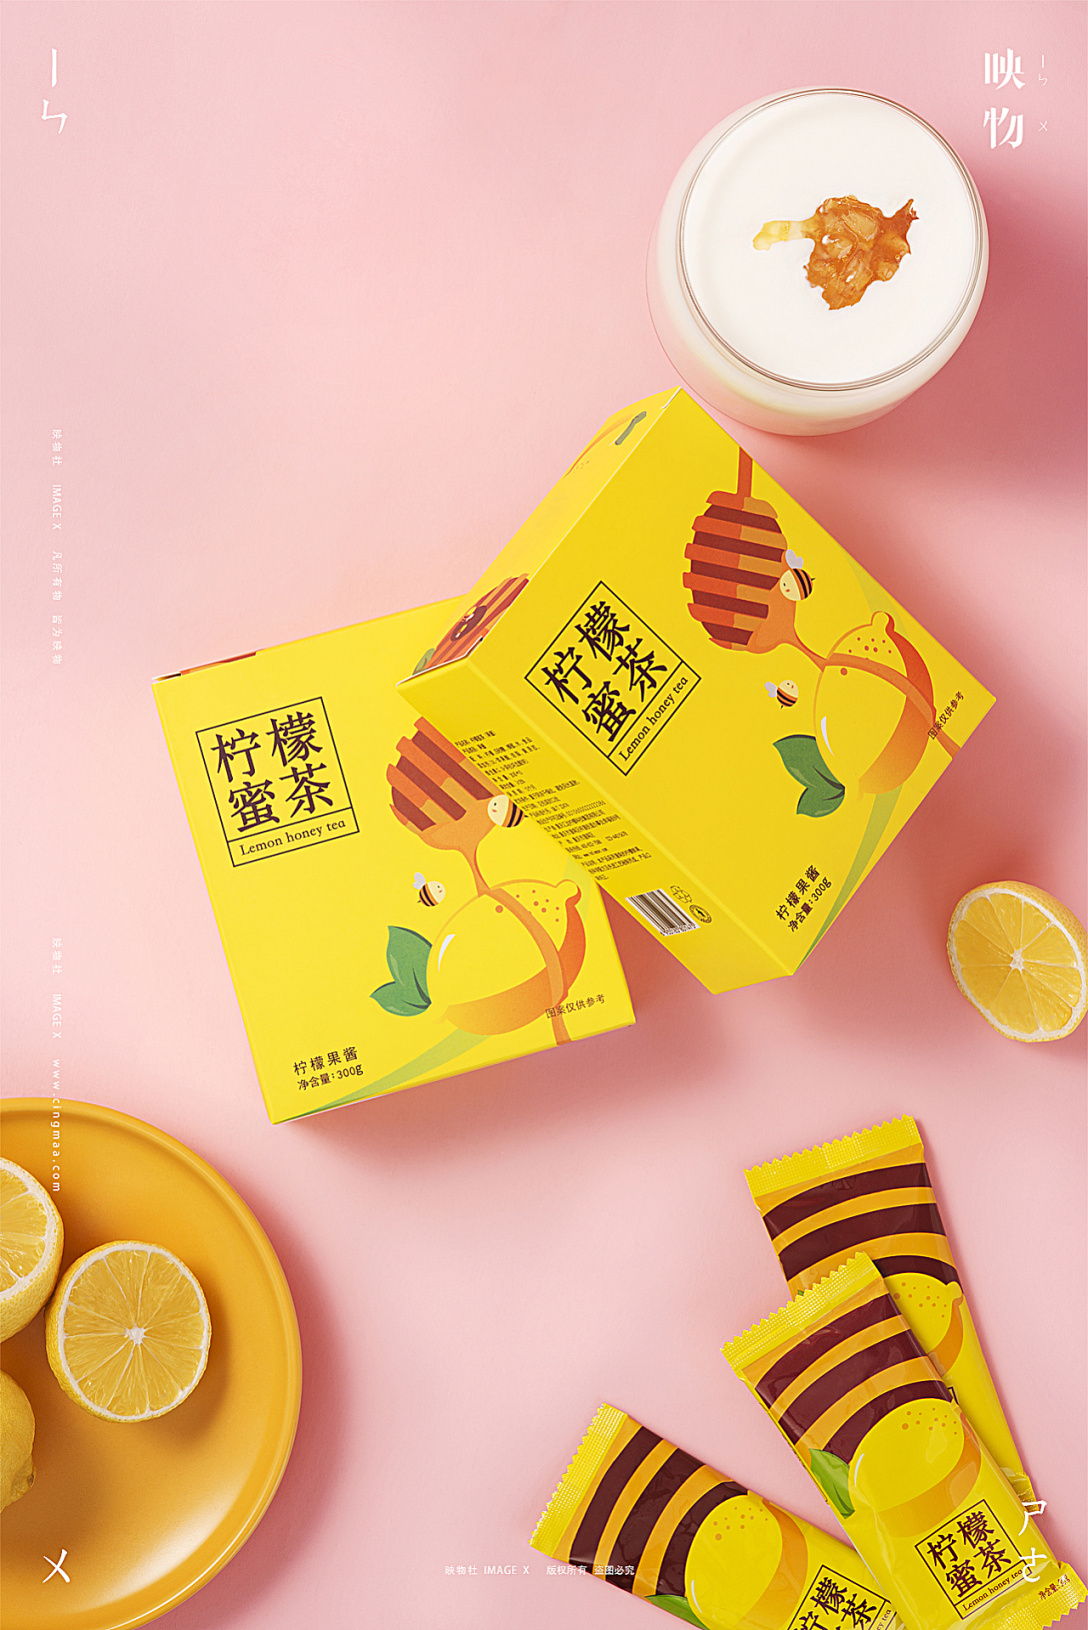 电商摄影 | 柠檬蜜茶+柠檬即食片 x 映物社-古田路9号-品牌创意/版权保护平台